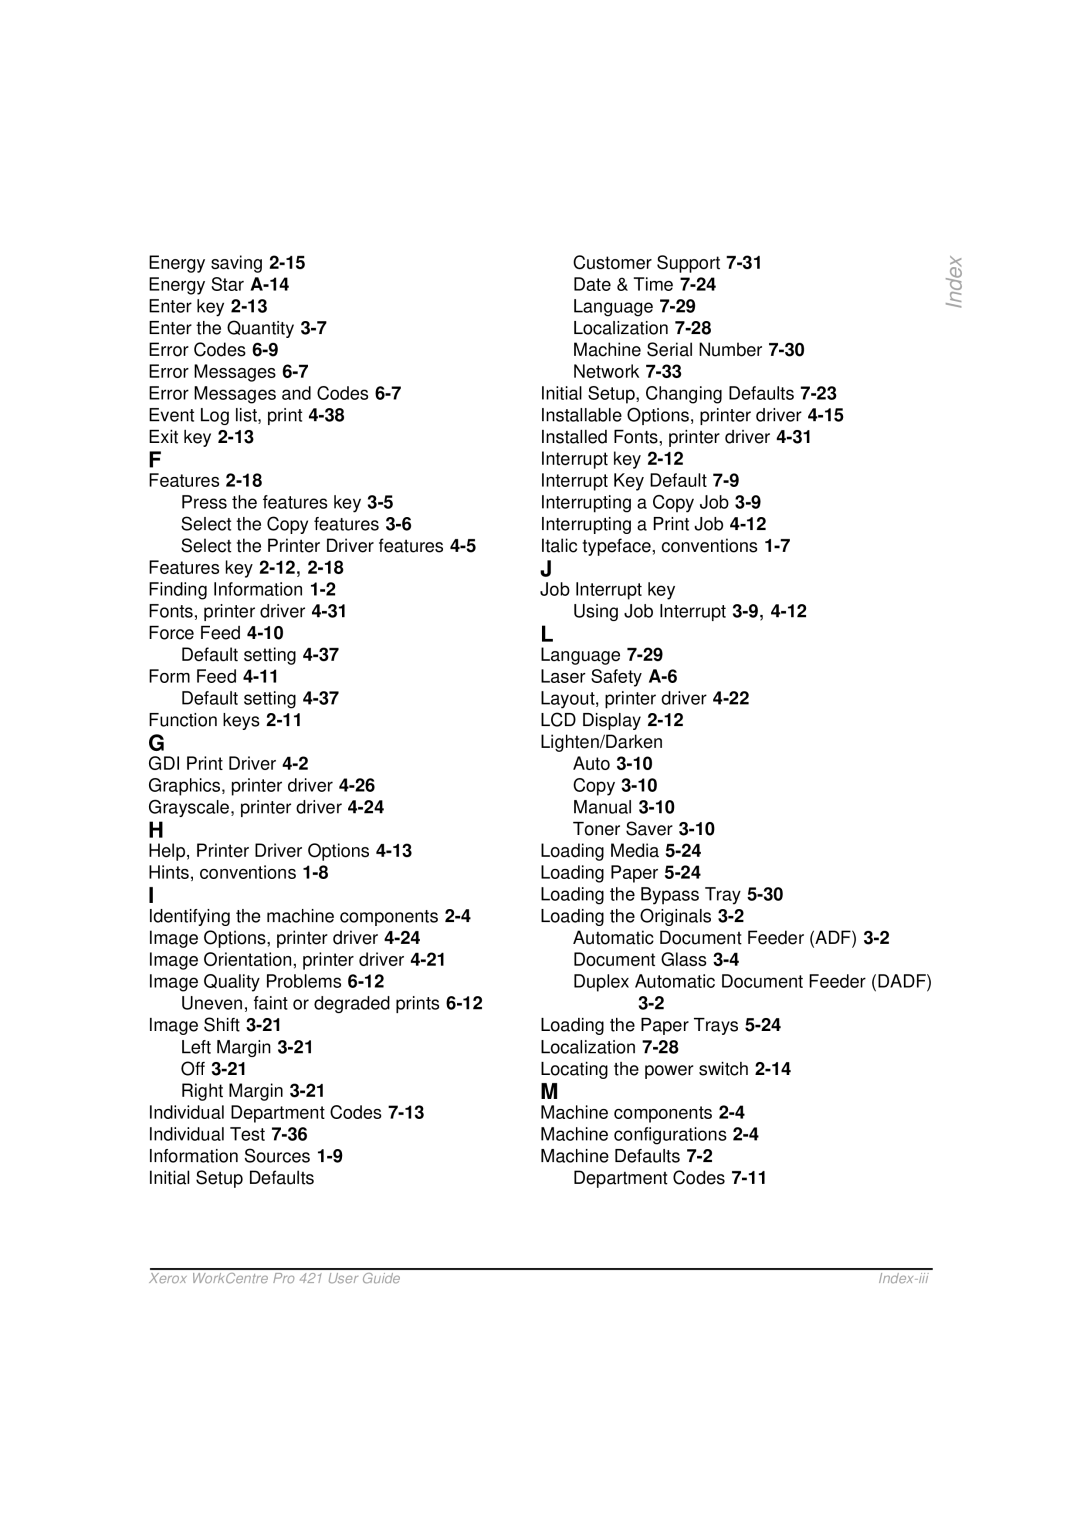 Xerox 421 manual Index-iii 